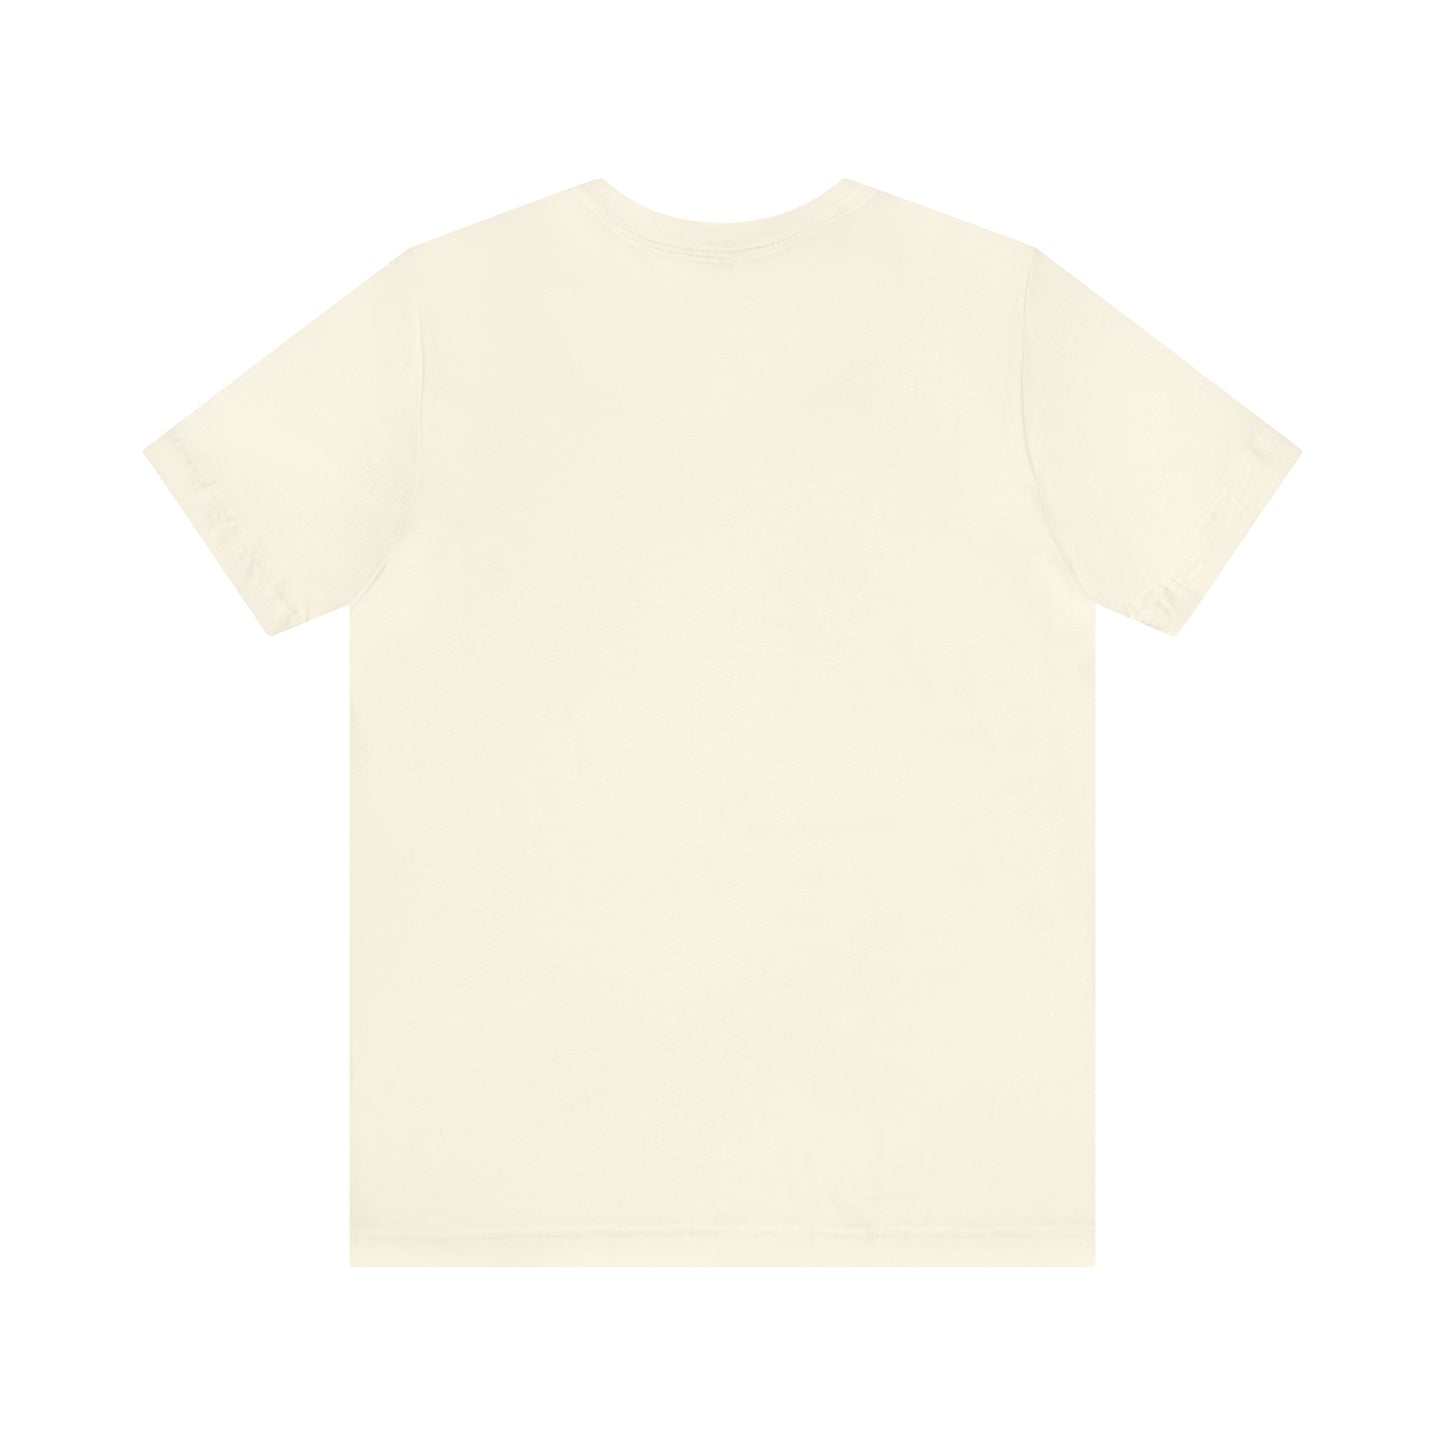 GI GI XOXO T-Shirt